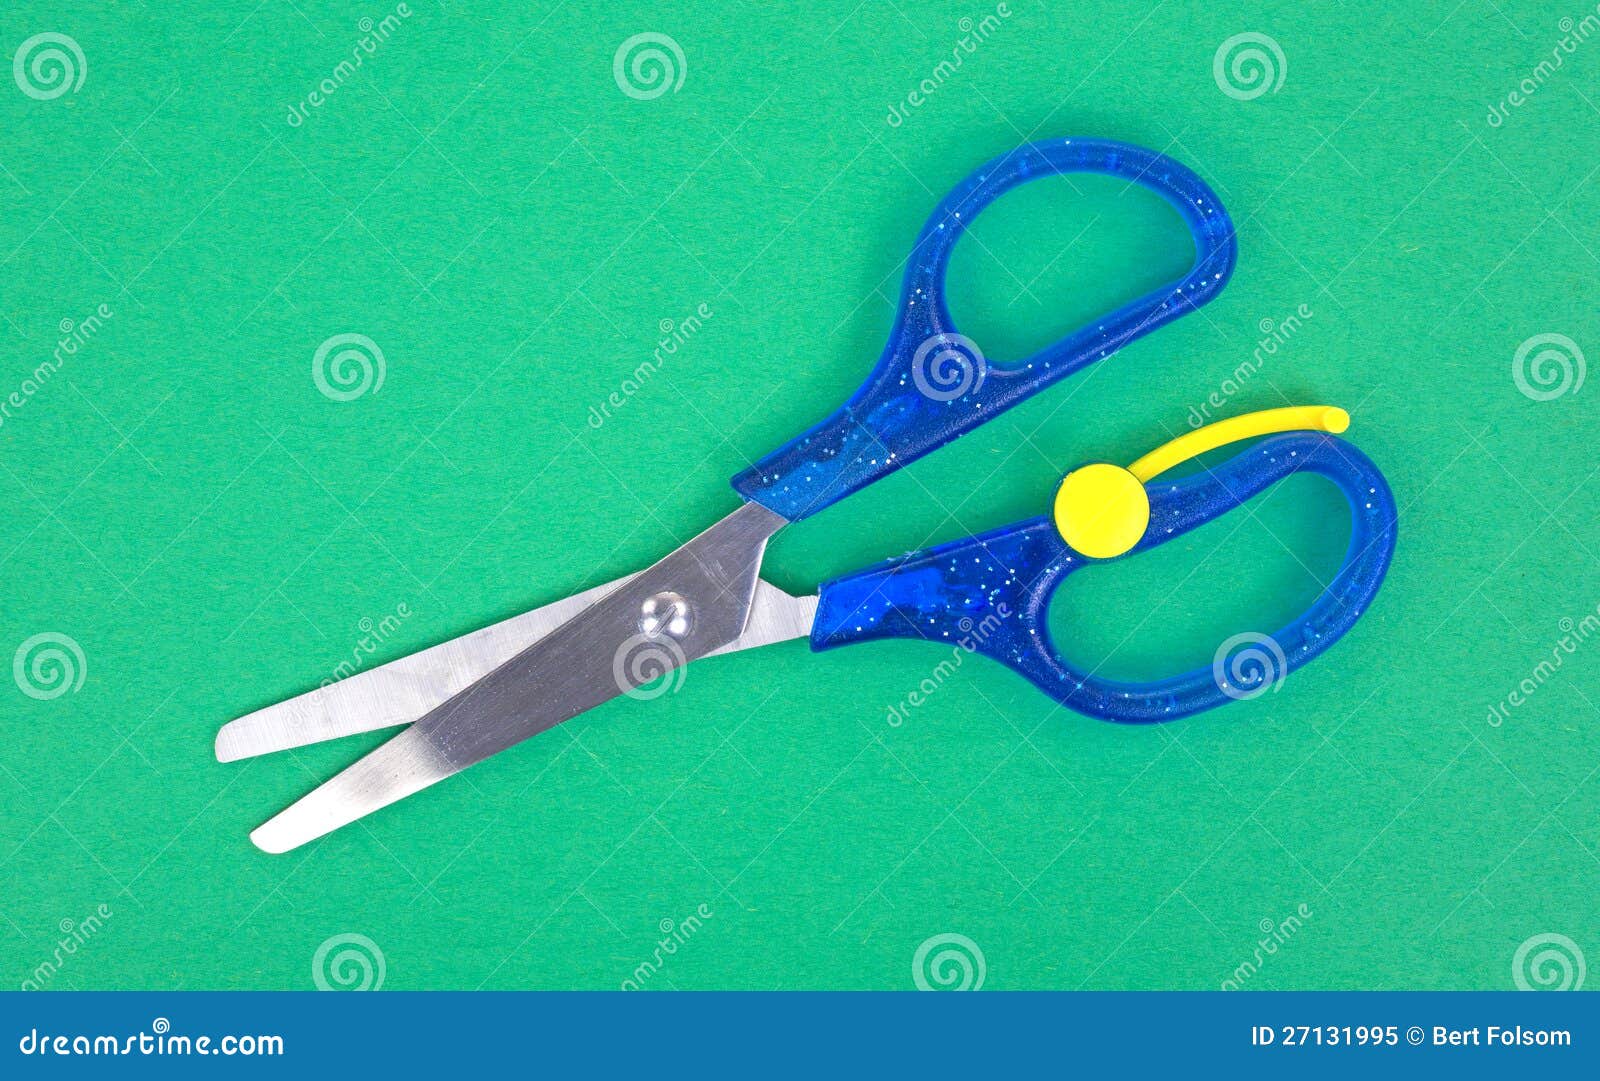 Child Scissors